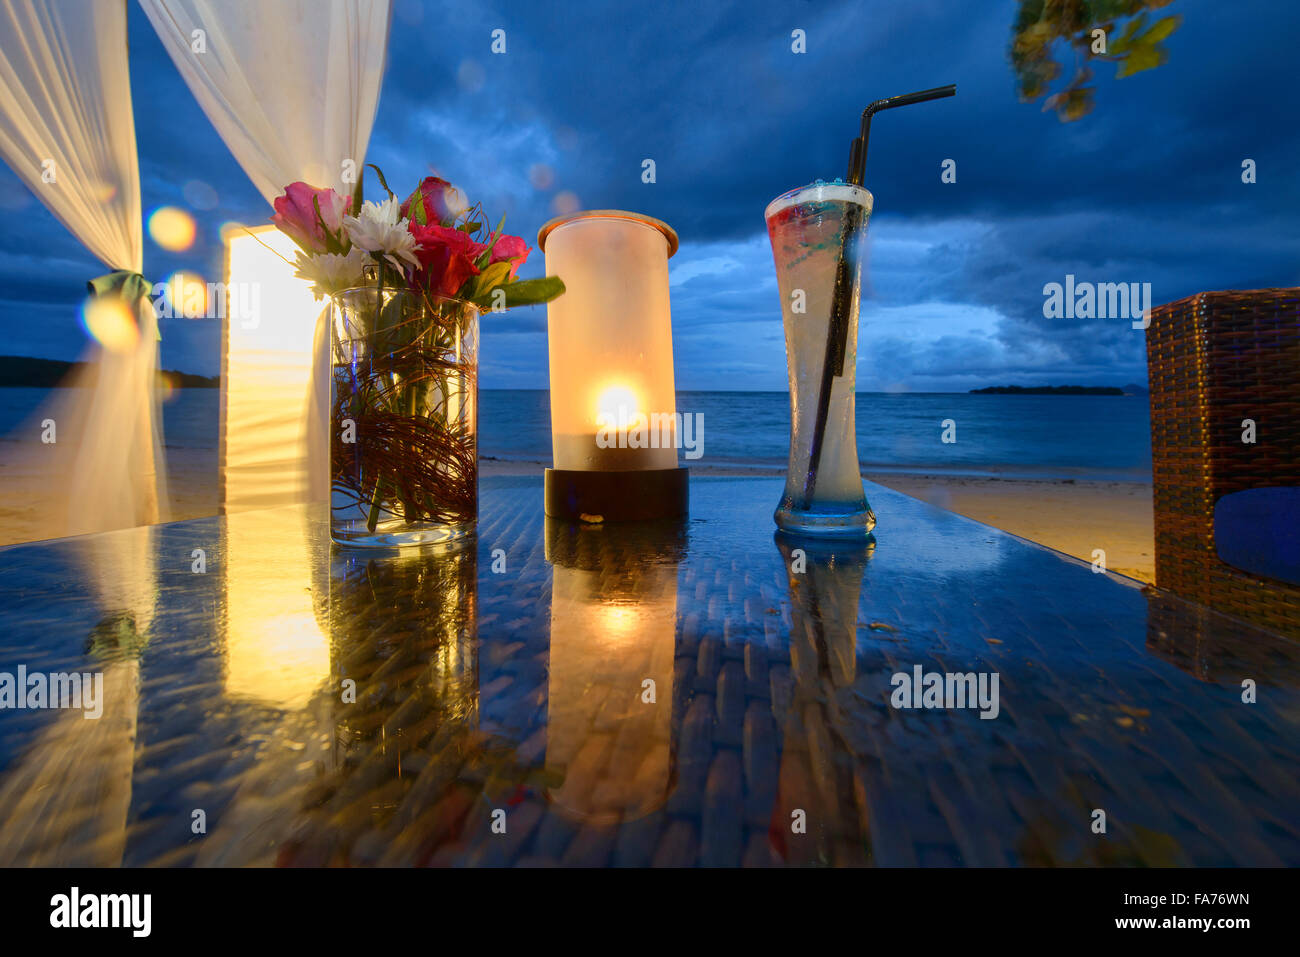 Tableau romantique en bord de mer sur l'île de Koh Samui, Thaïlande Banque D'Images